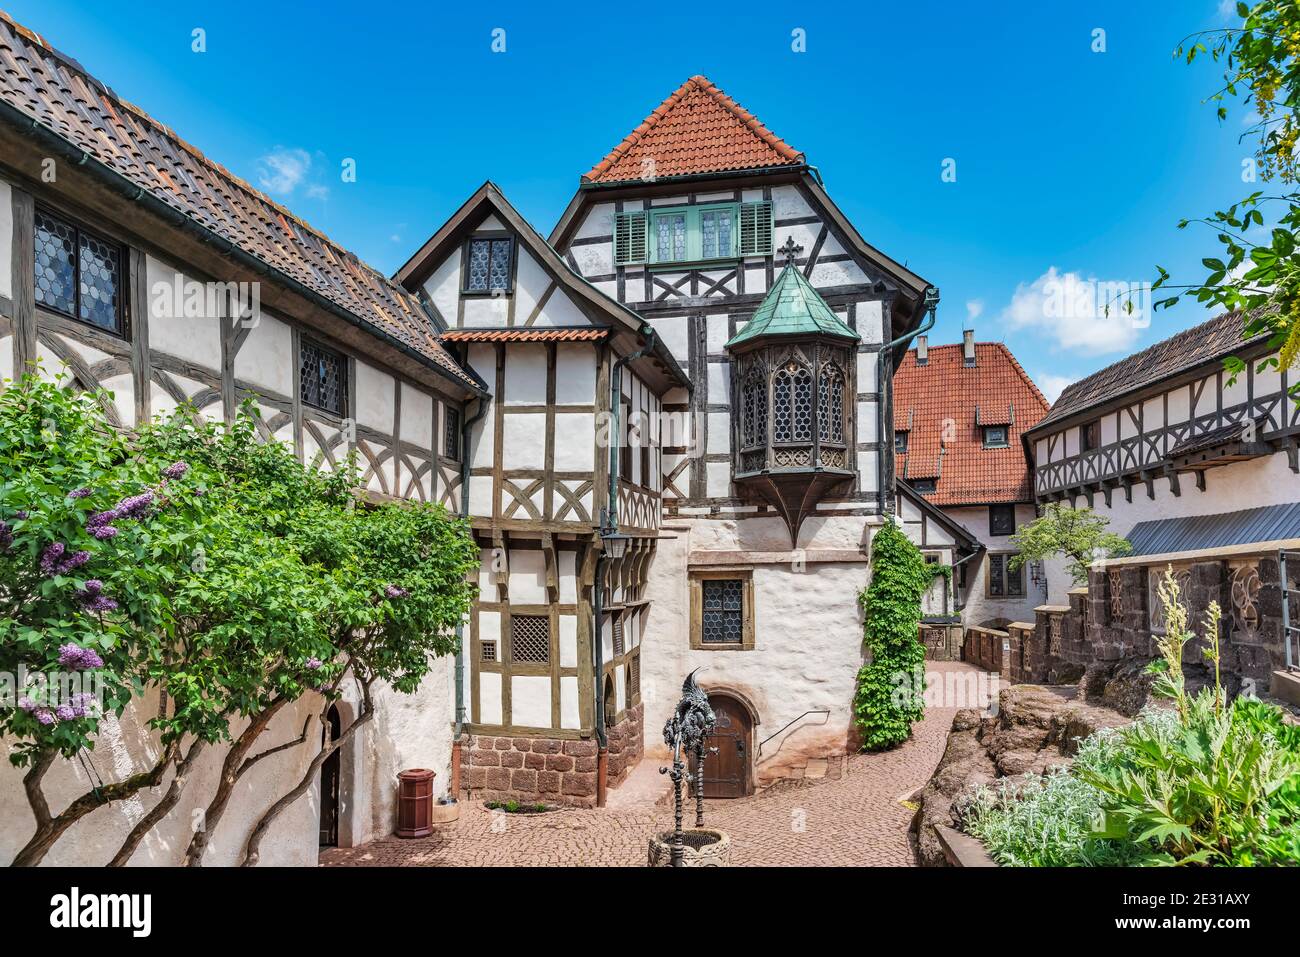 Die Wartburg wurde 1067 gegründet und ist seit 1999 UNESCO-Weltkulturerbe, Eisenach, Thüringen, Deutschland, Europa Stockfoto